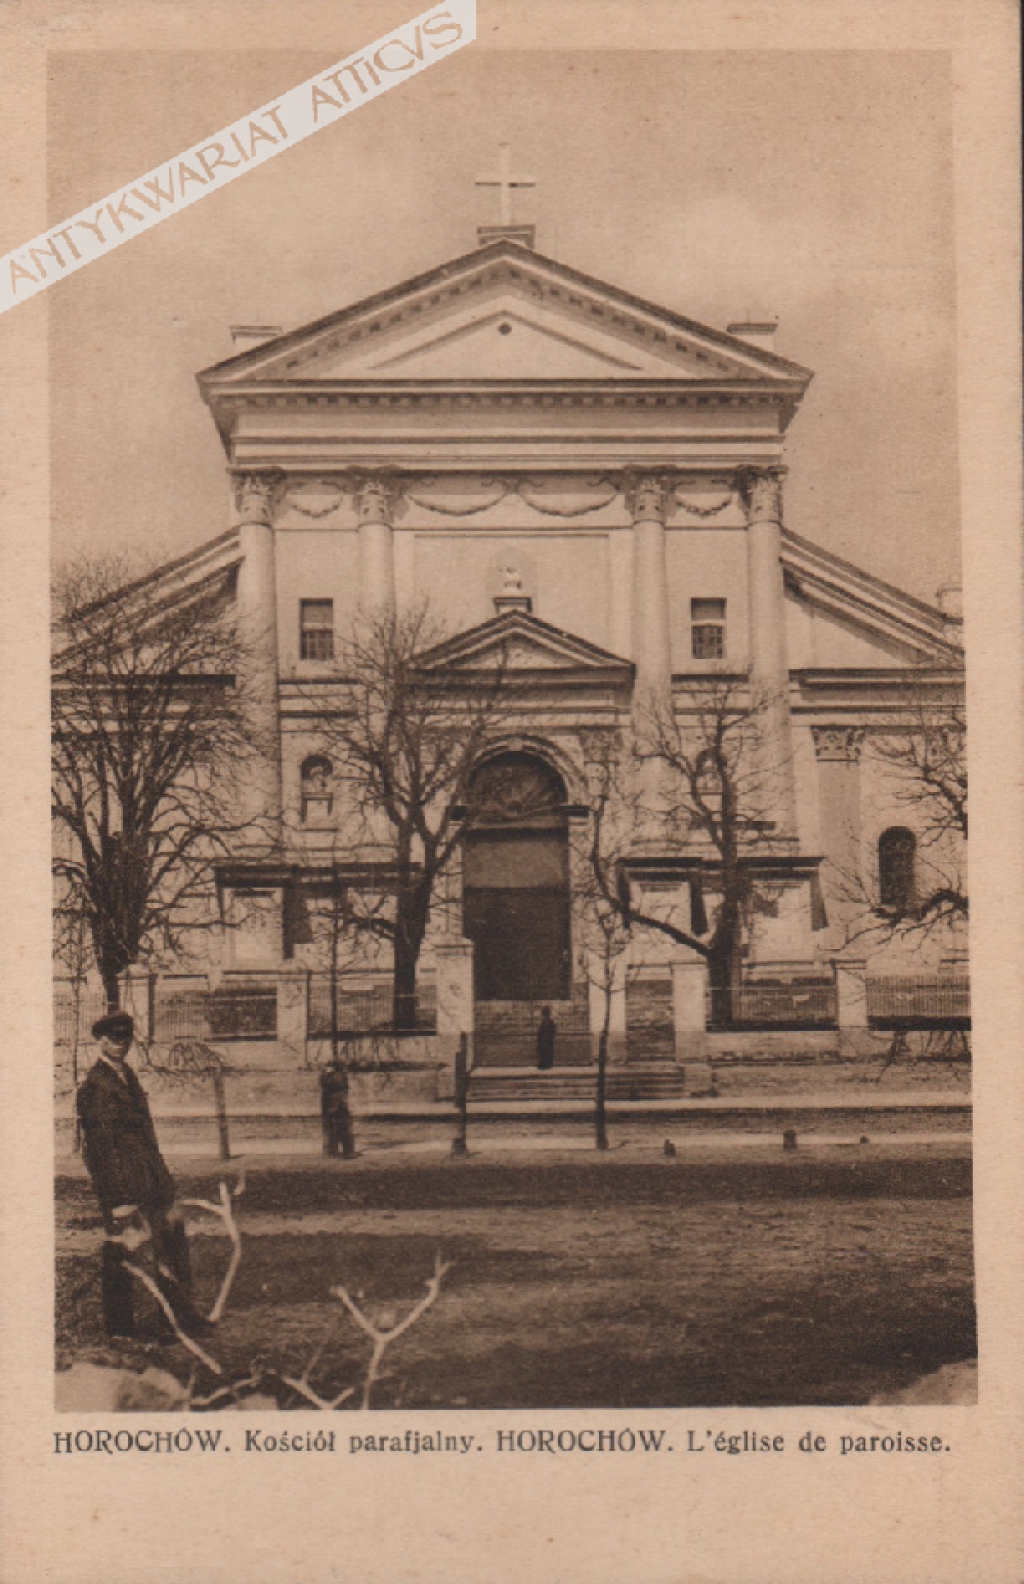 [pocztówka, lata 30-te] Horochów. Kościół parafialnyHorochów. L'eglise de paroisse